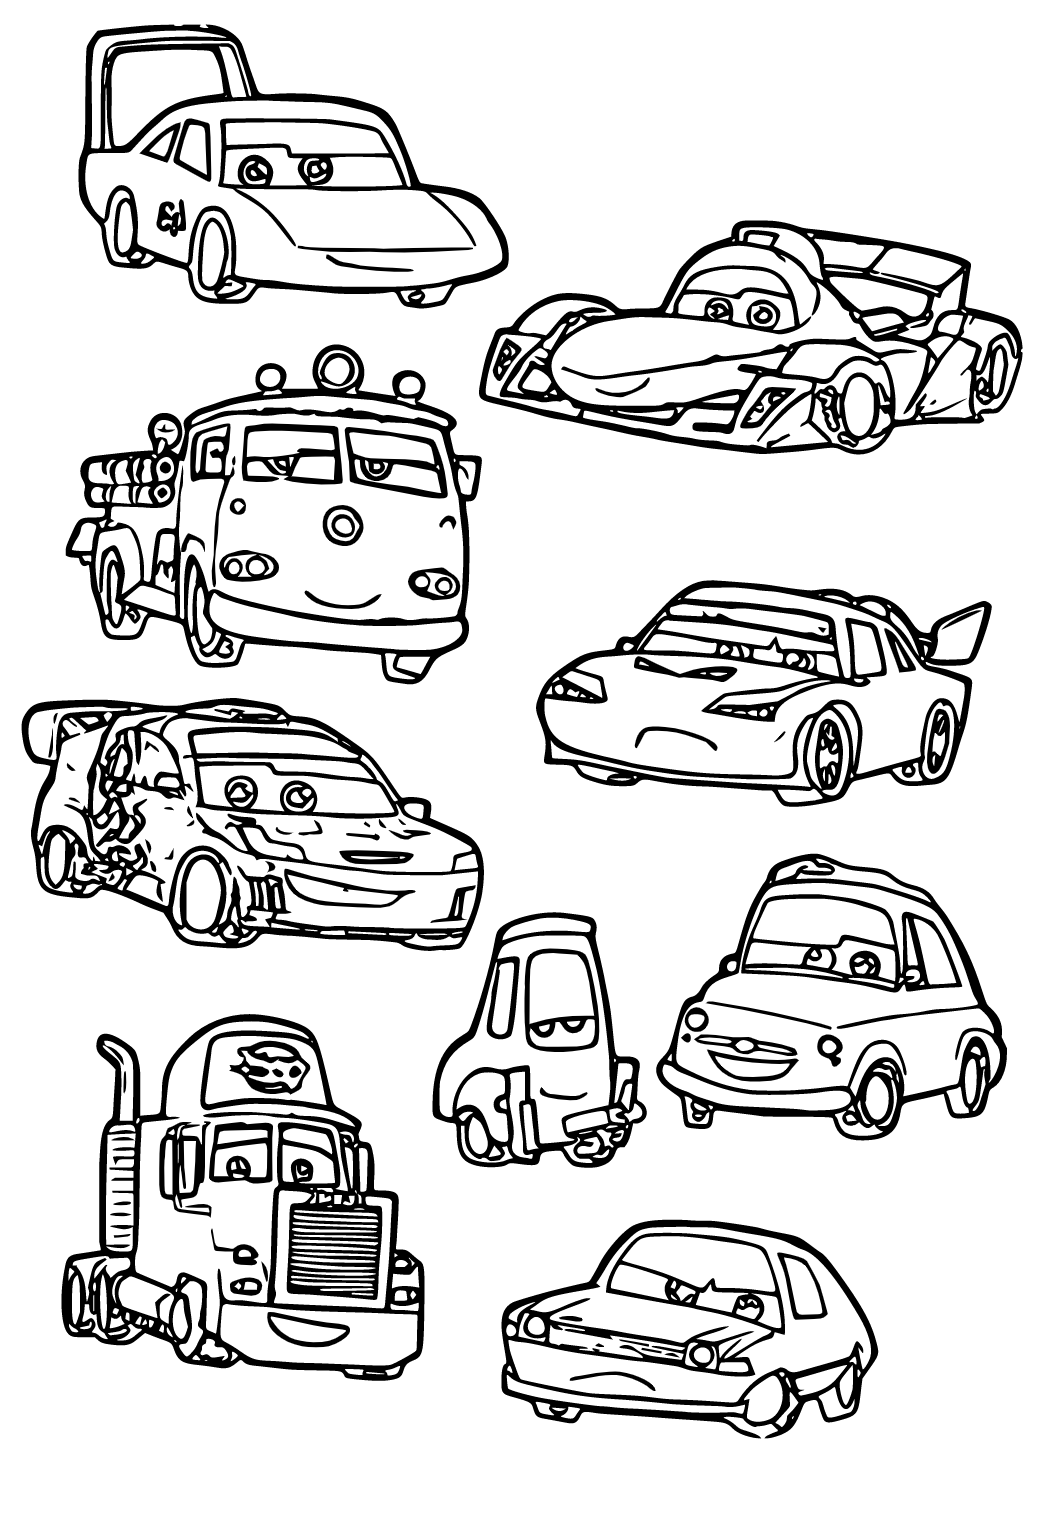 Desenhos de Carros Para Imprimir e Colorir - Desenhos Para Colorir   Desenhos para colorir carros, Desenhos de carros, Carros para colorir